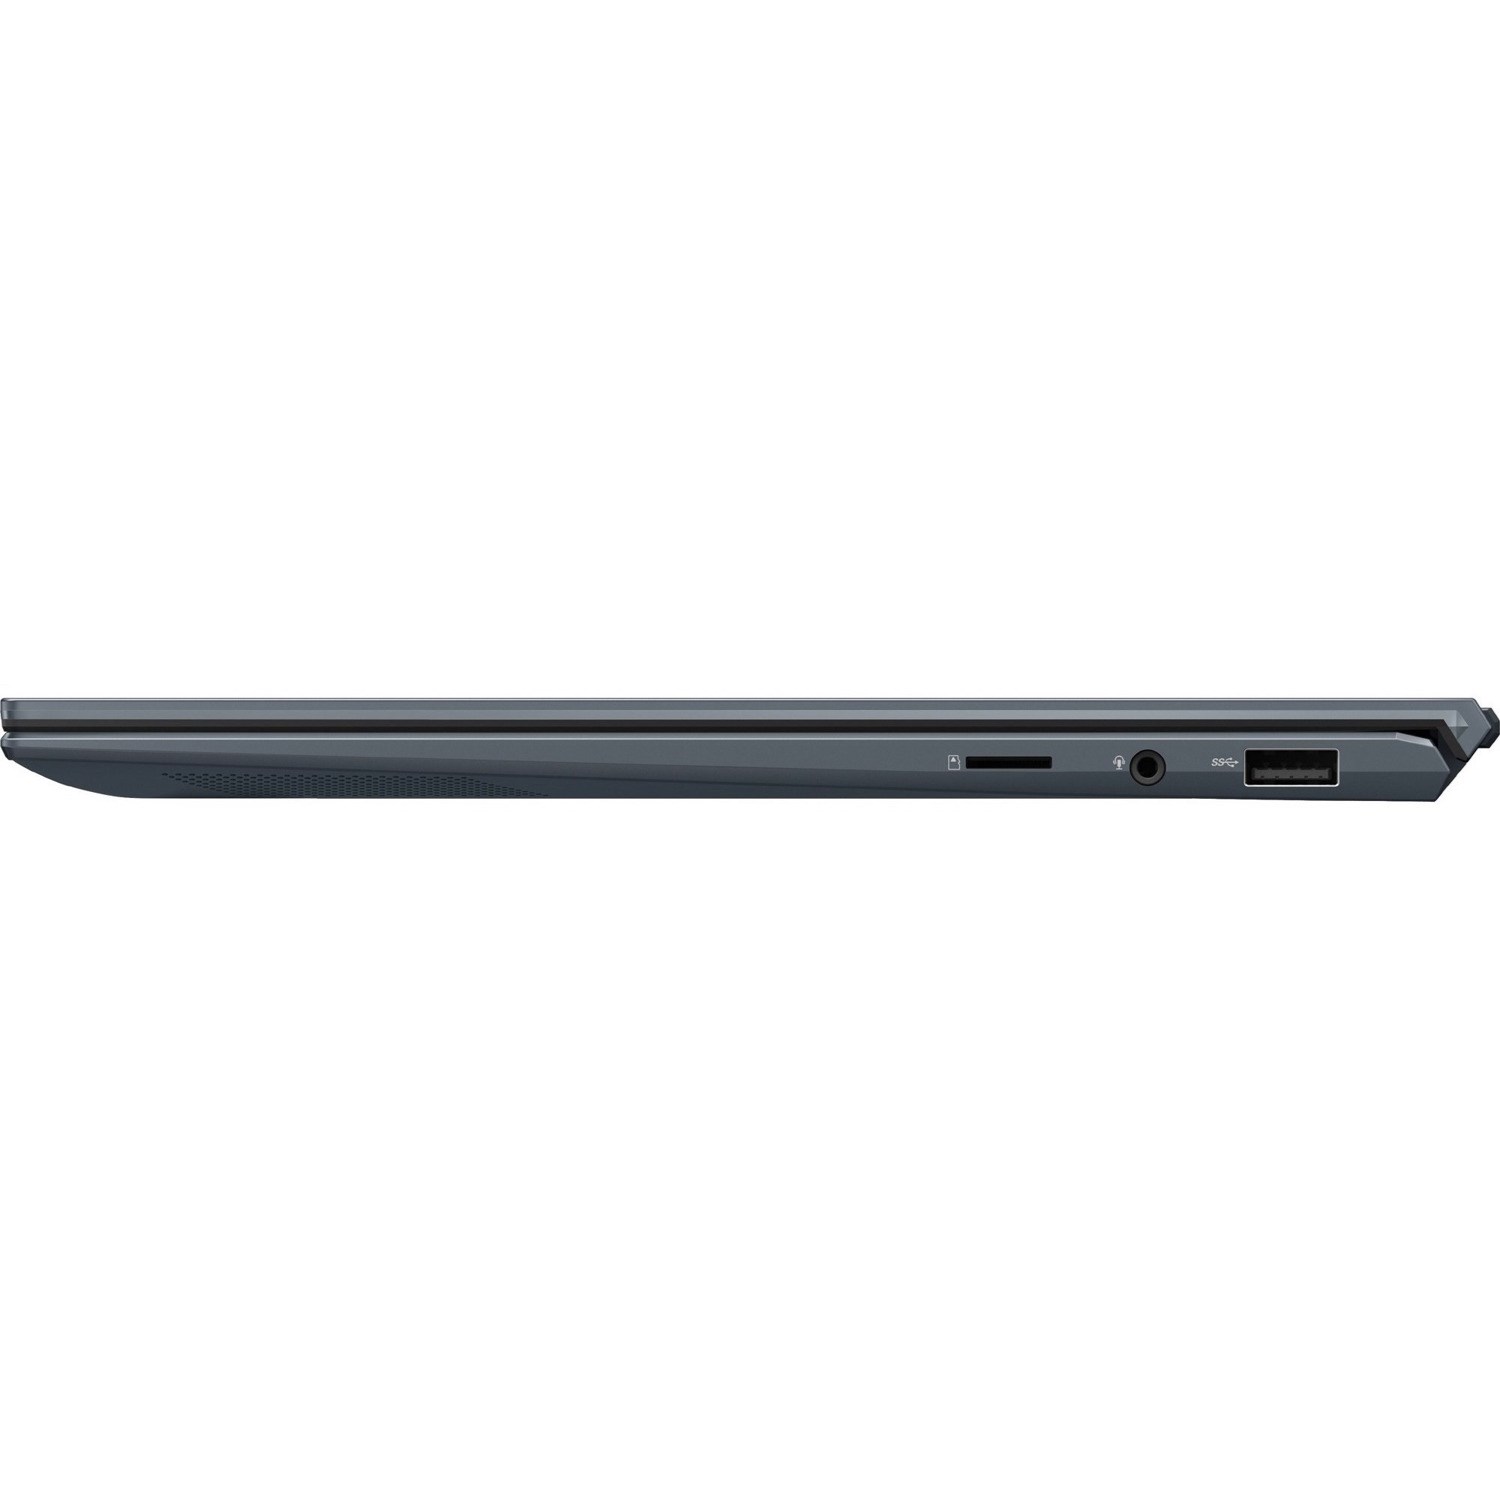 لپ تاپ 15.6 اینچی ایسوس مدل ZenBook 15 UX535LI-BN192